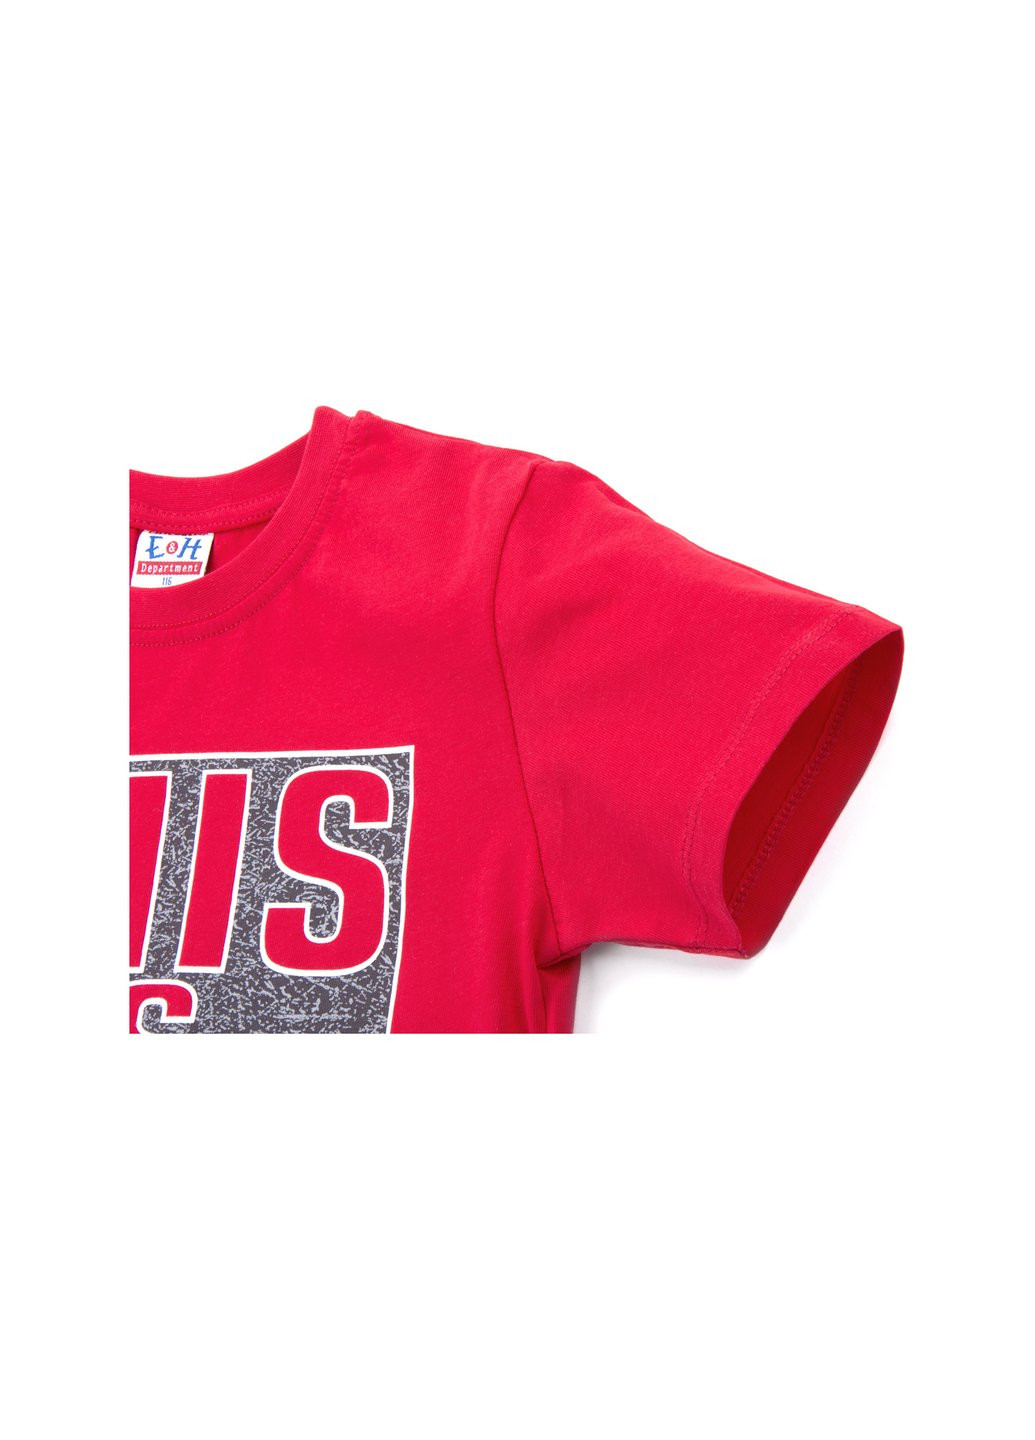 Красный летний набор детской одежды футболка "this is me" с шортами (8939-116b-red) Breeze